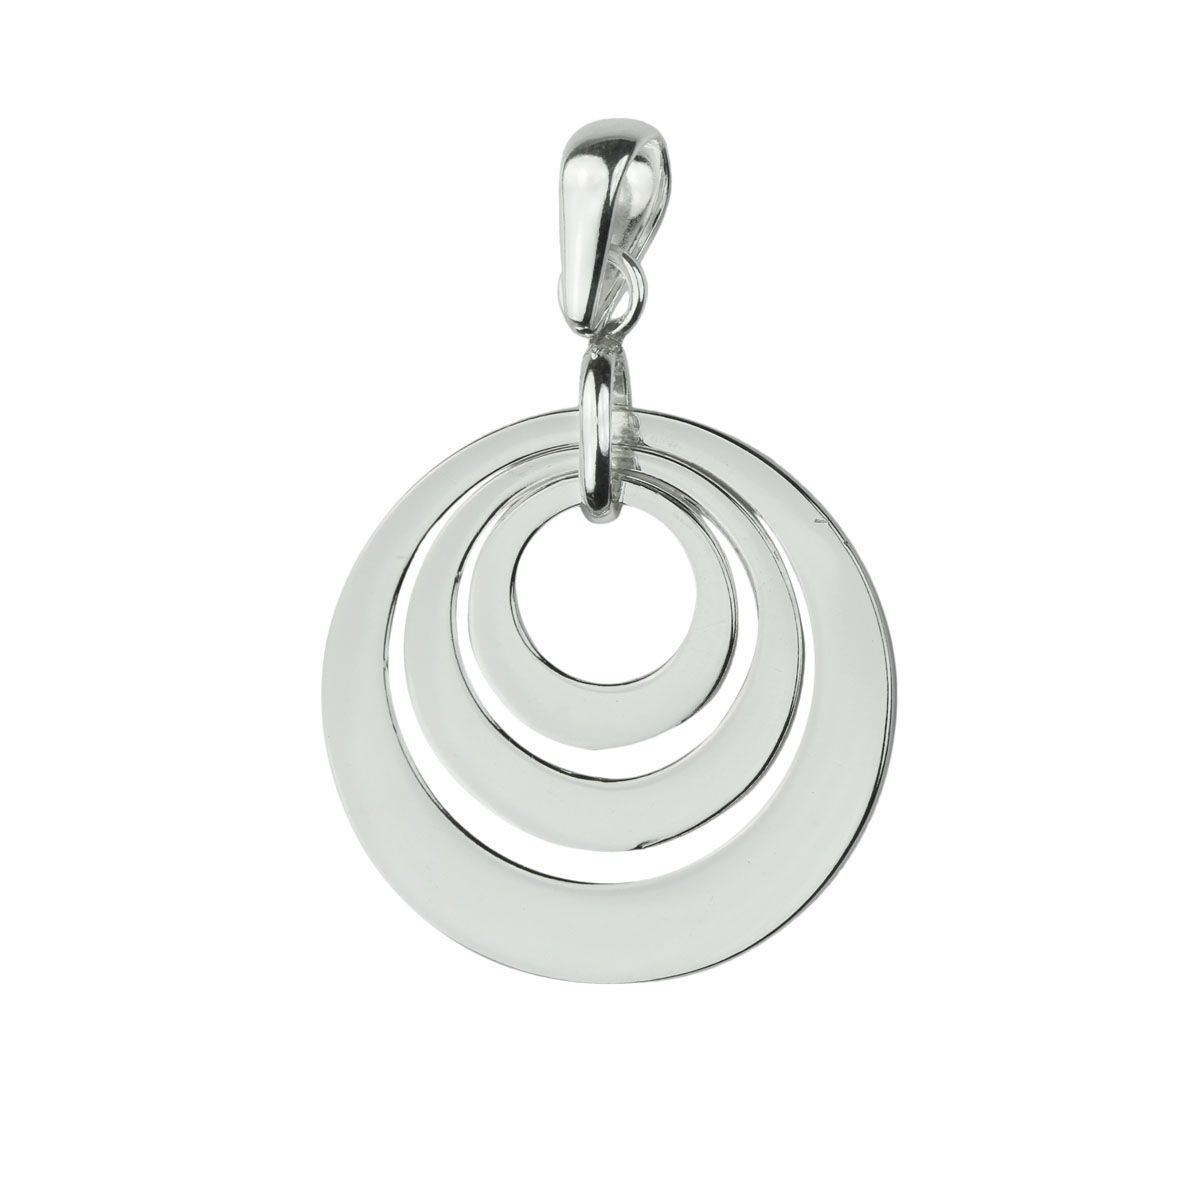 Graded personalised hoop necklace